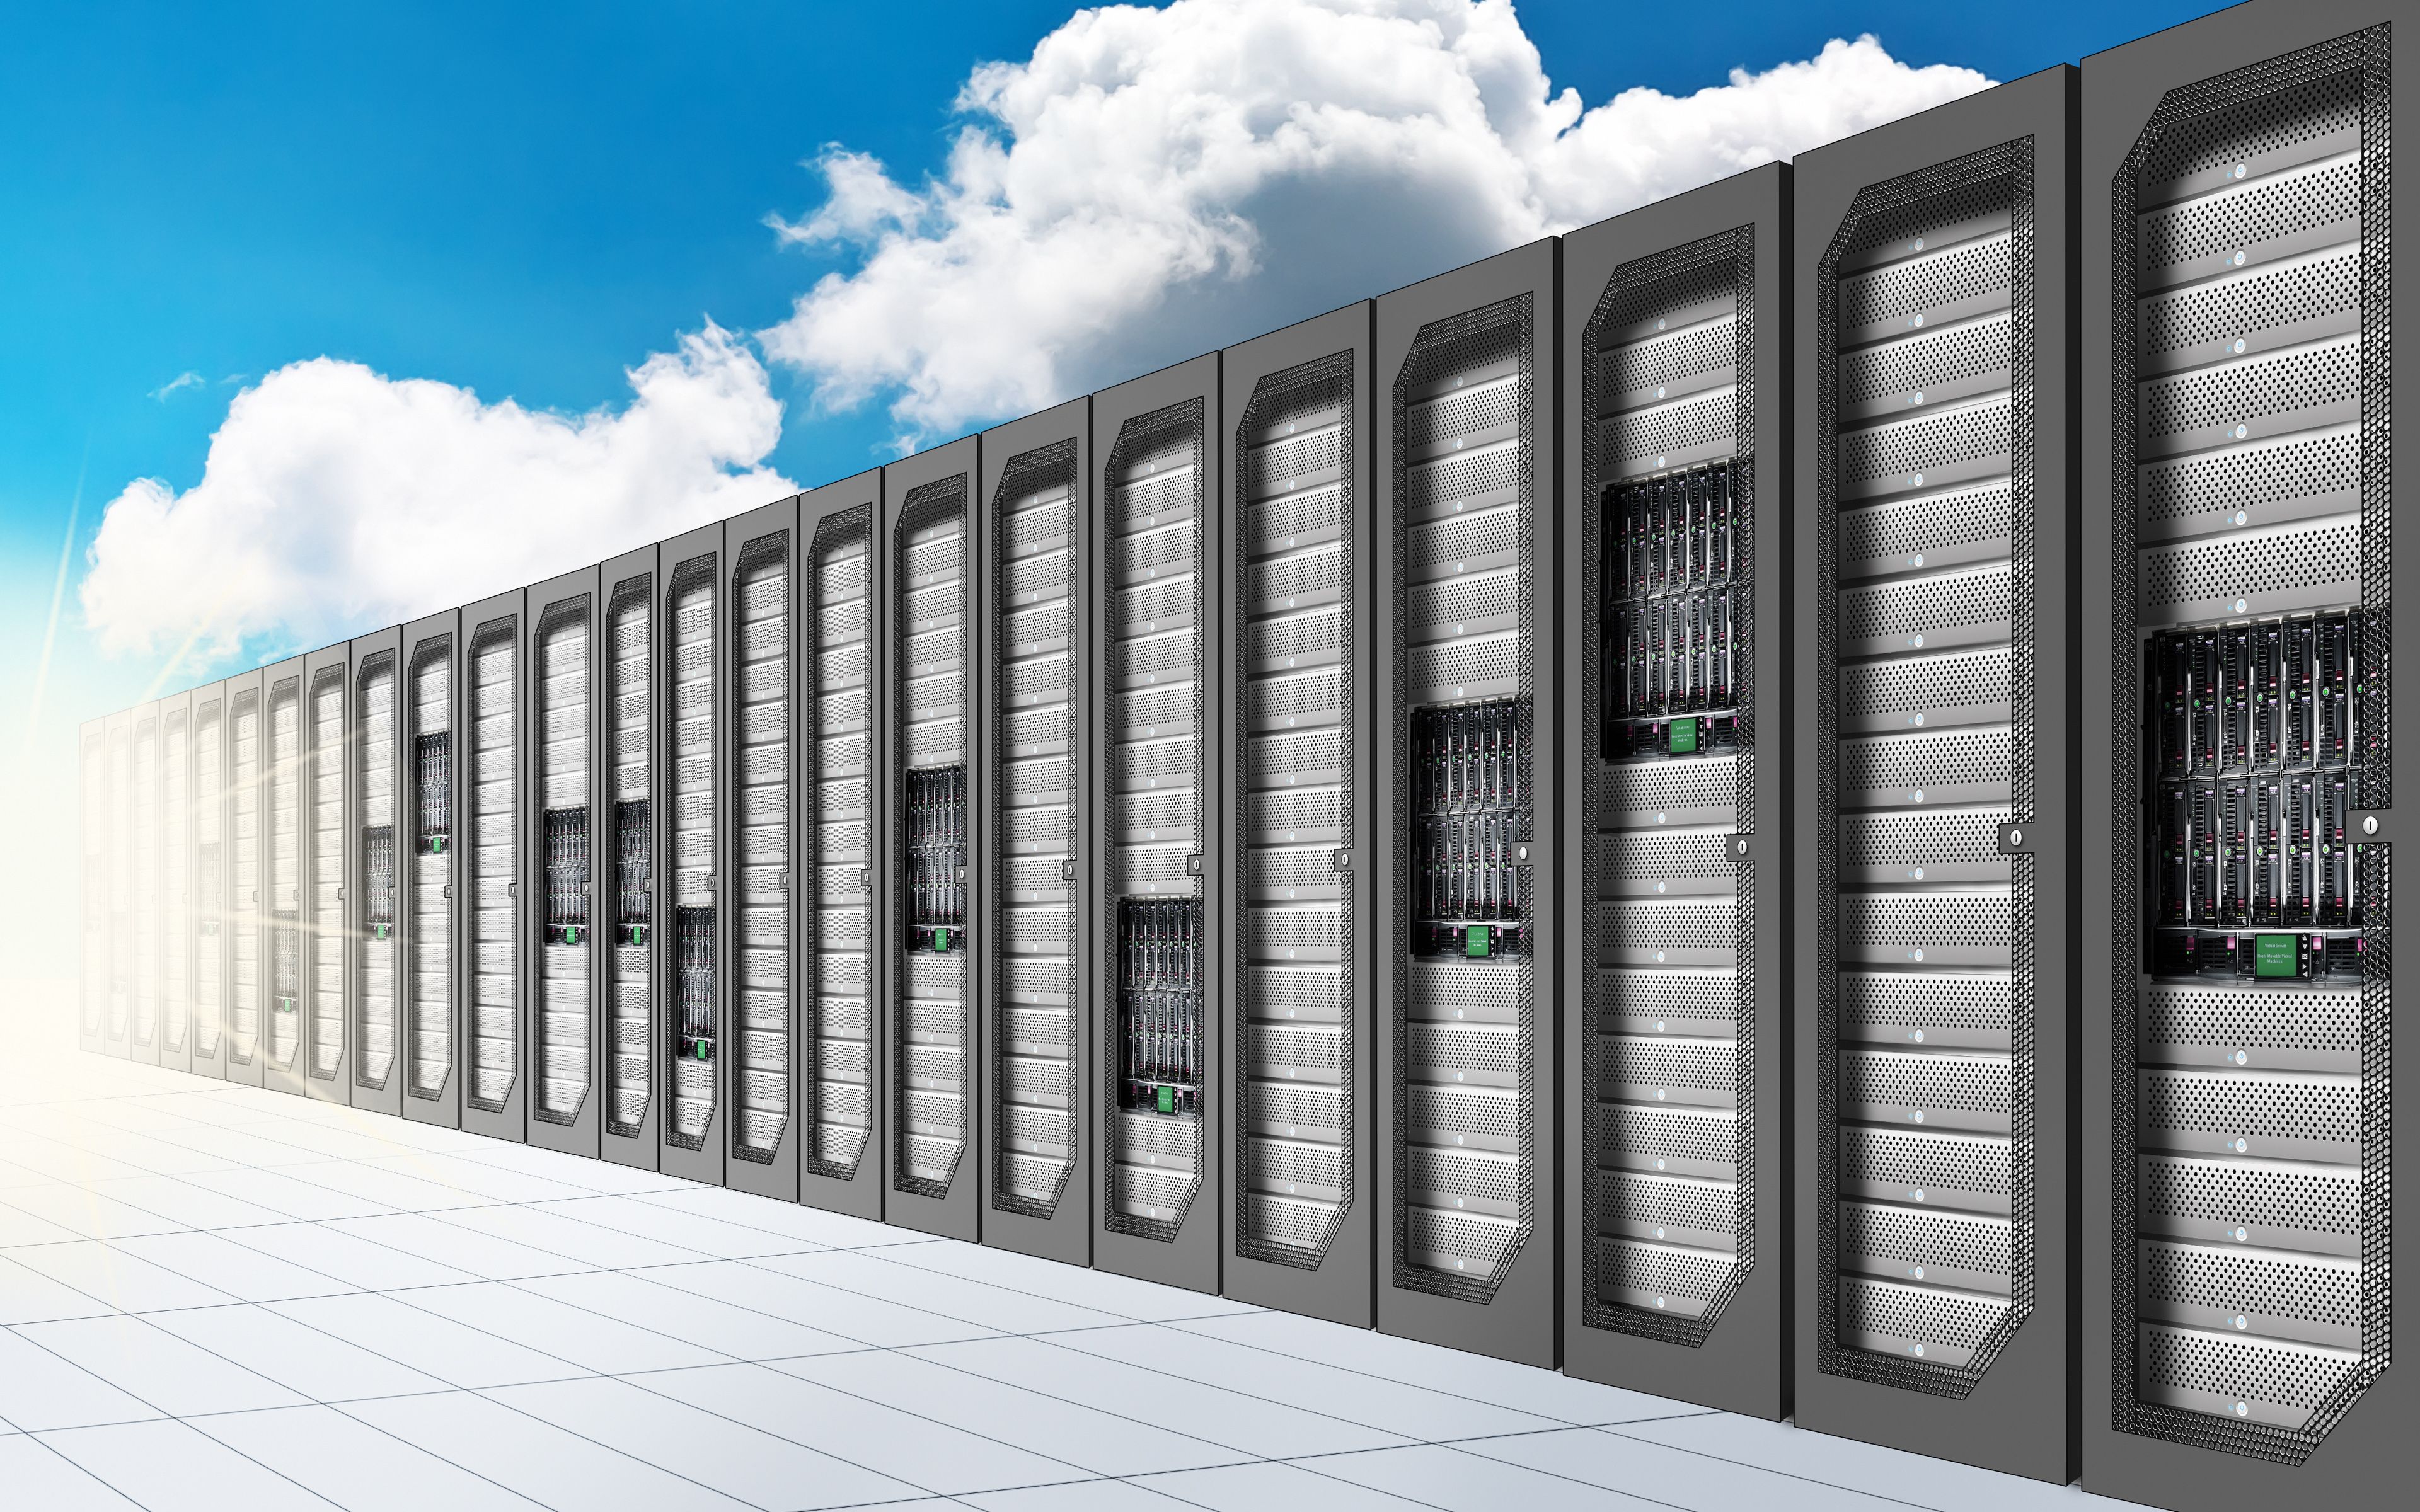 Download wallpaper servers, data center, 4k, cloud technologies